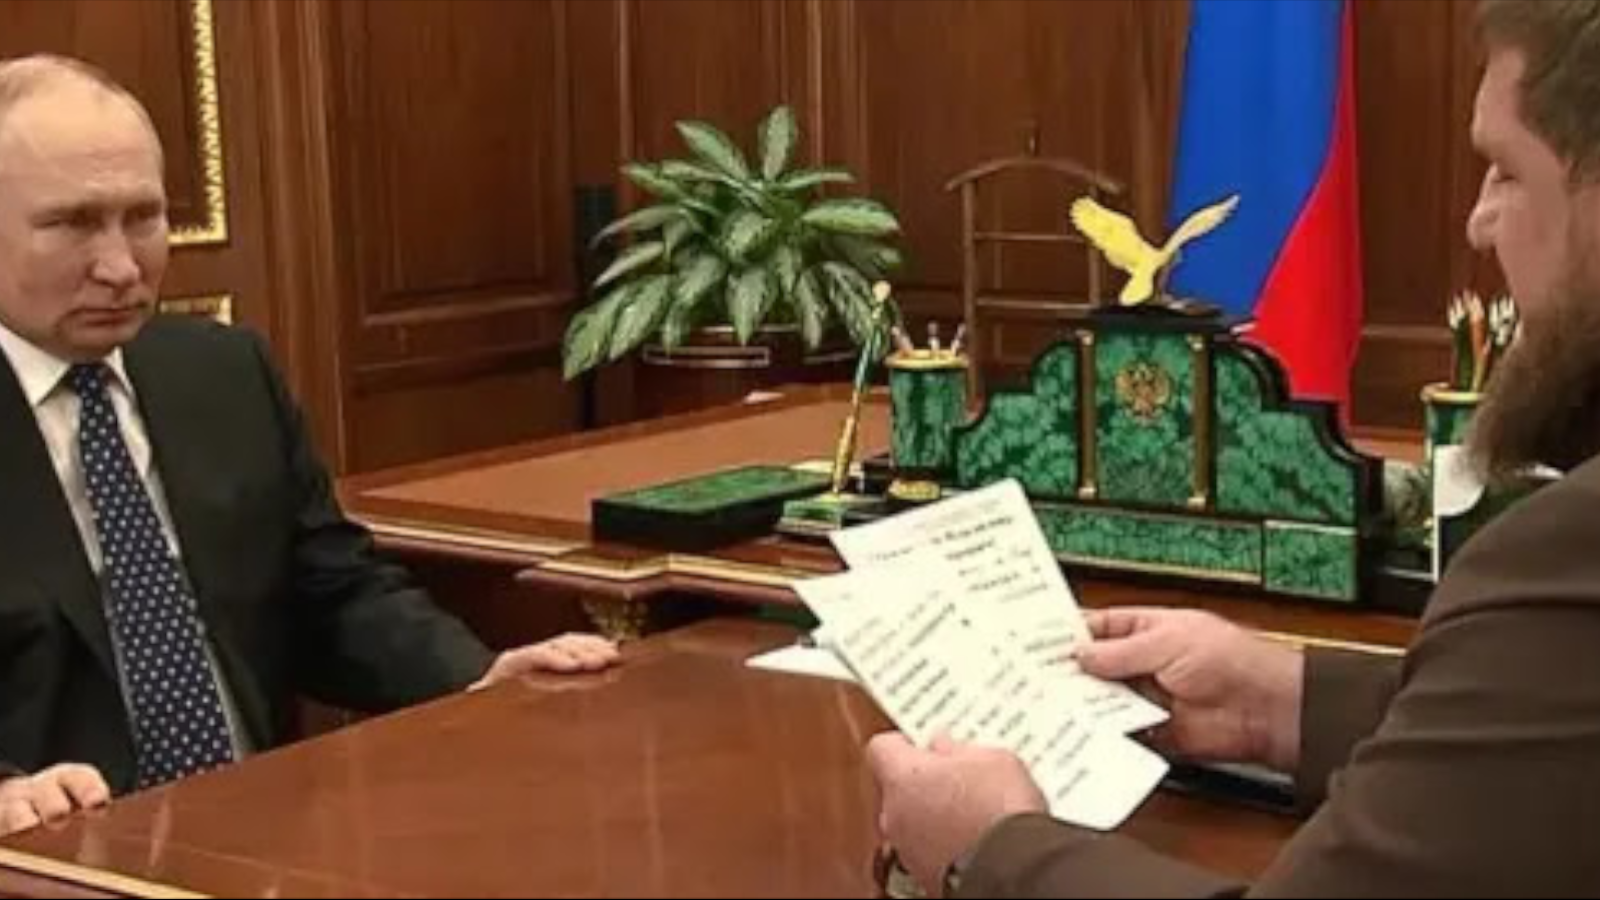 Надругательство над Кораном — это дело рук Путина и Кадырова, заявляет правительства Республики Татарстан в изгнании